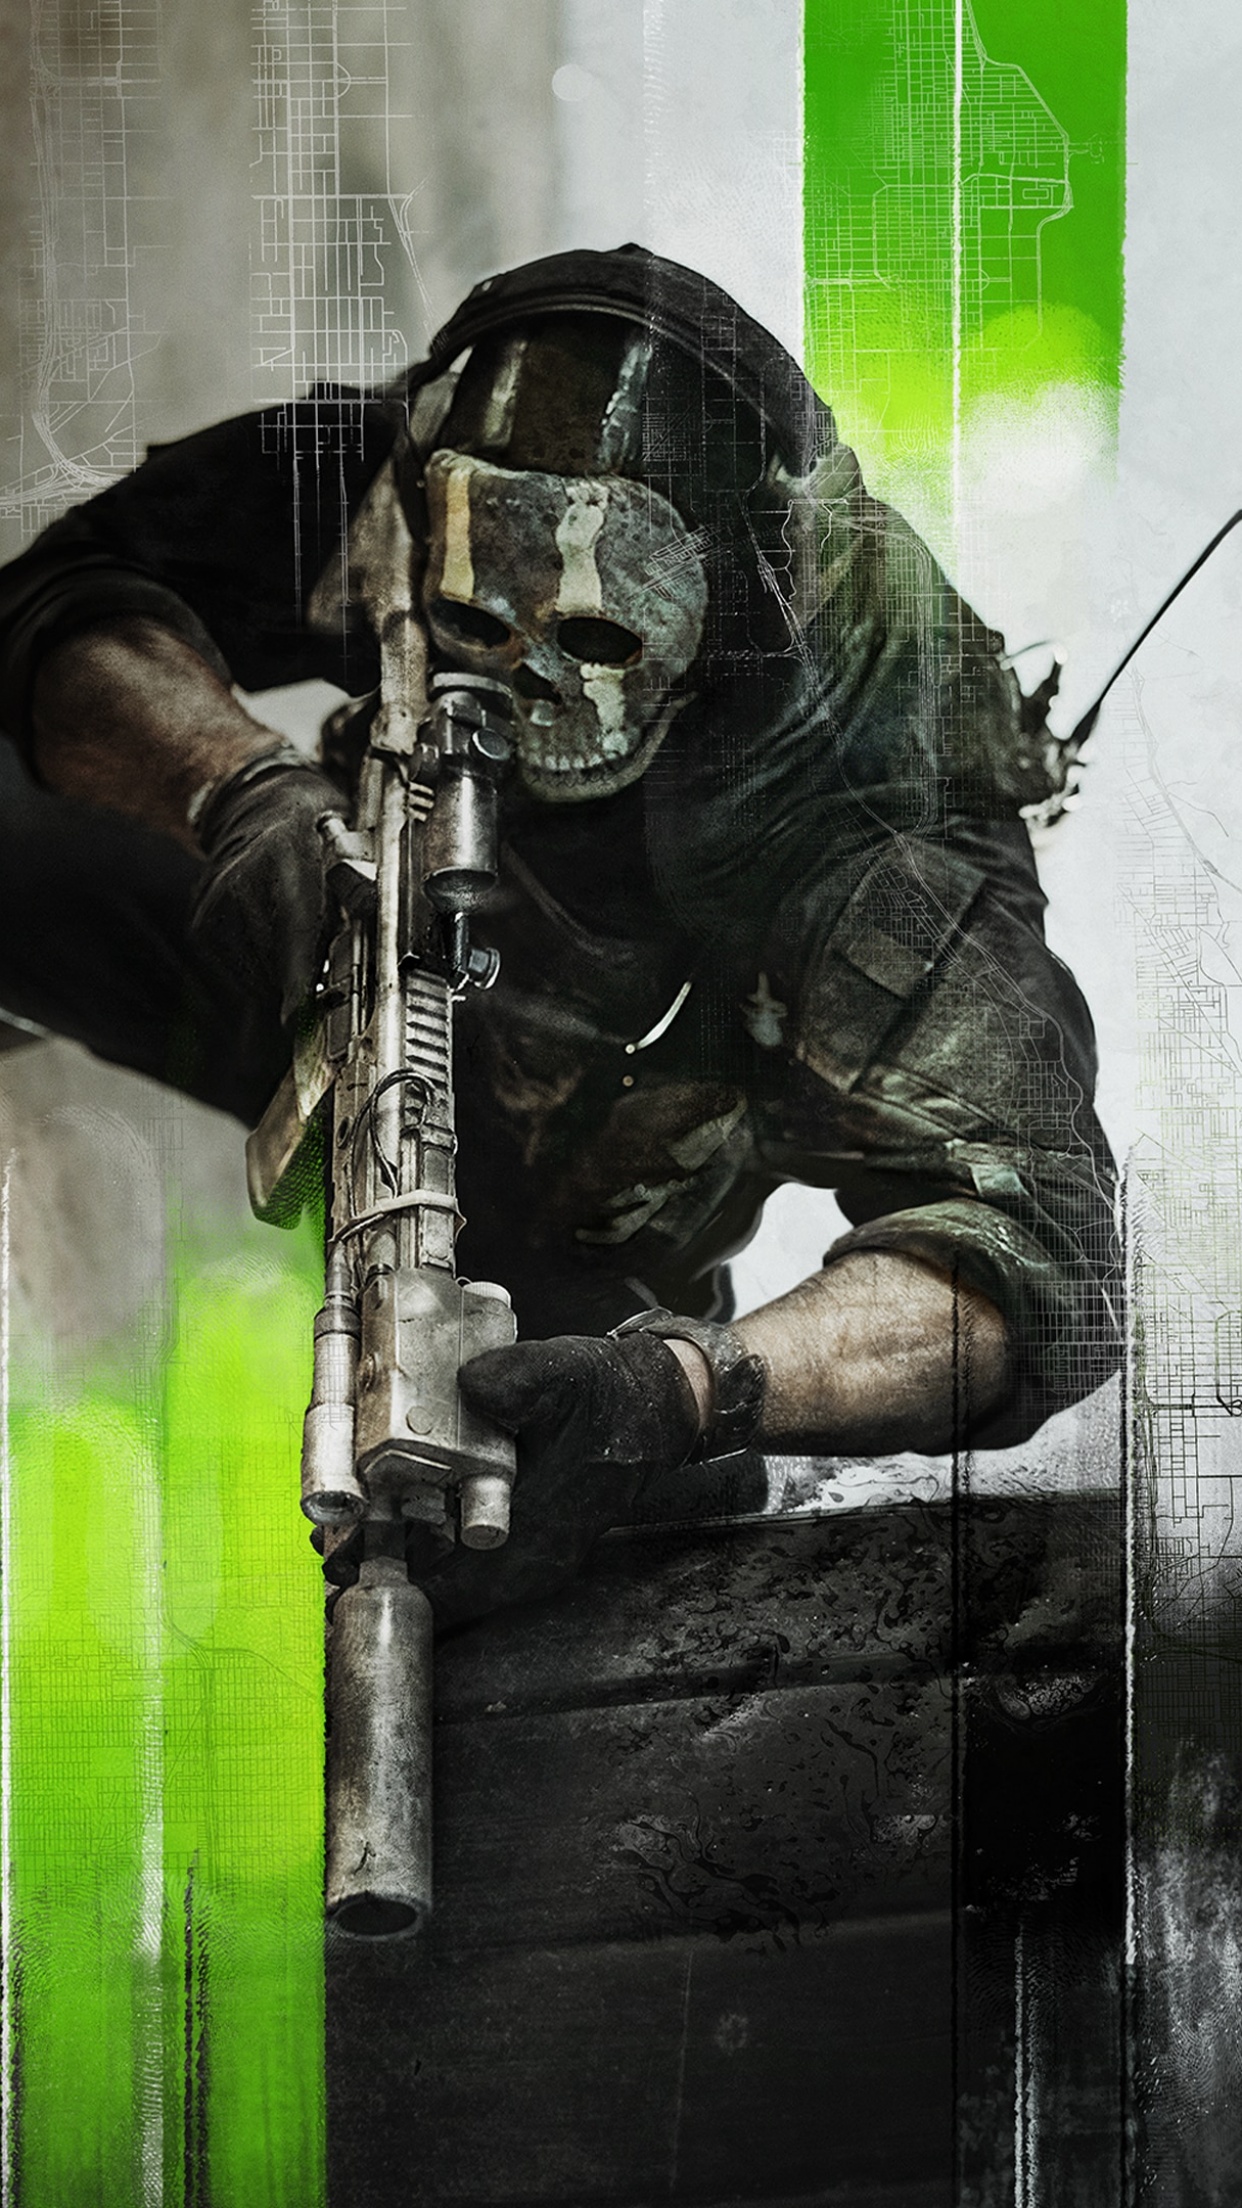 Call of Duty Modern Warfare 2 Wallpaper 4K War Zone Ghost 8542